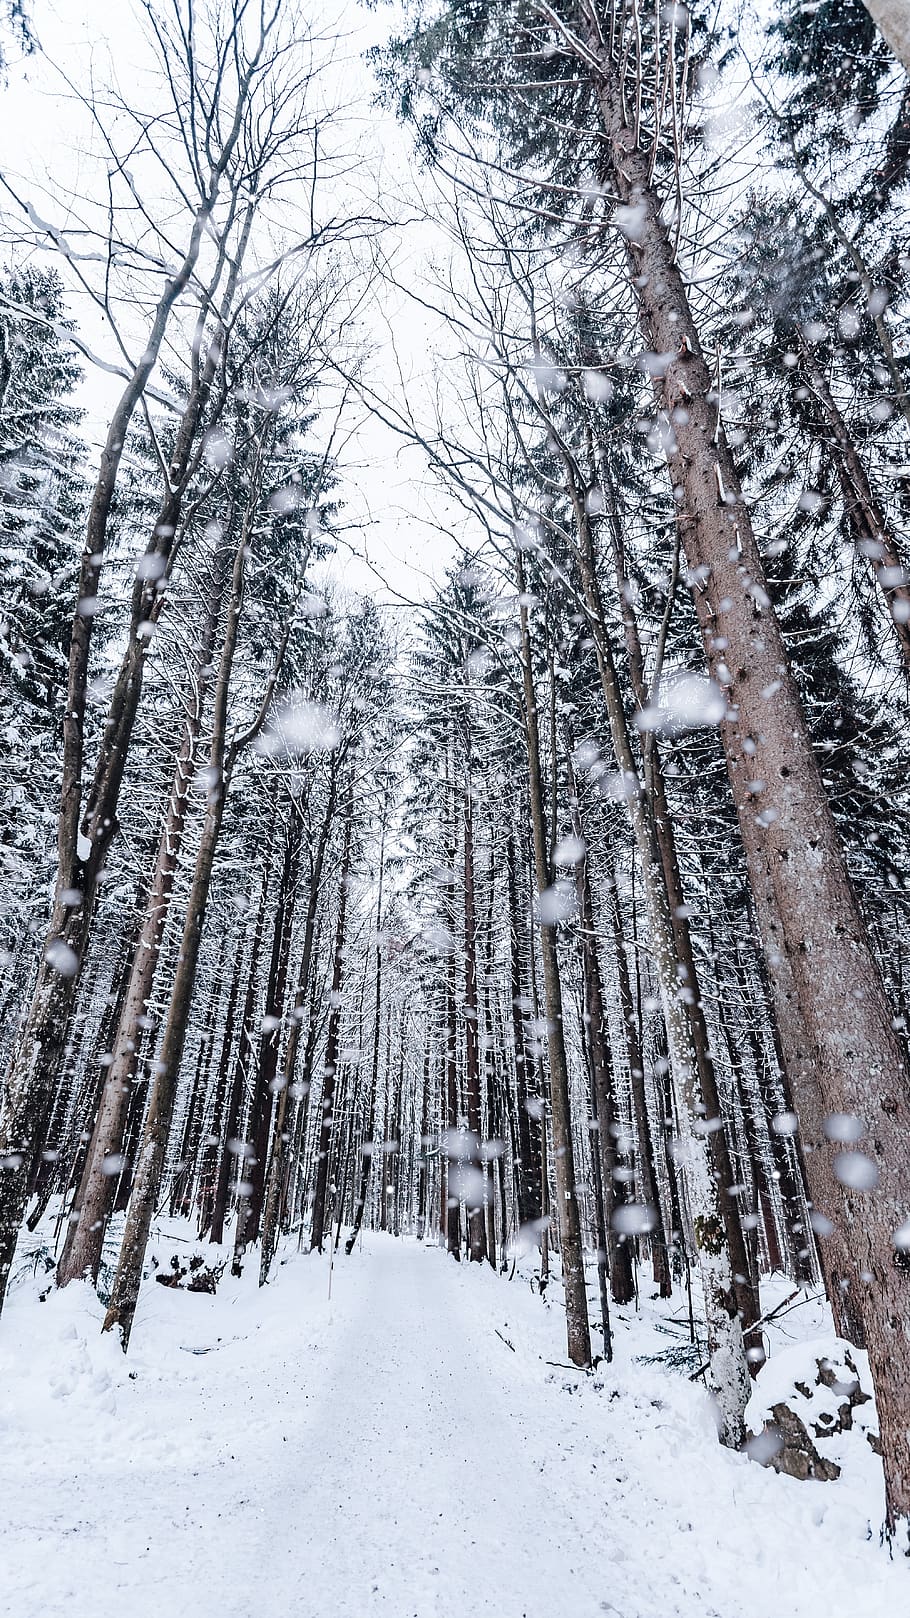 invierno, nieve, árbol, bosque, frío, nieve que cae, árboles, parque nacional, checo, temperatura fría